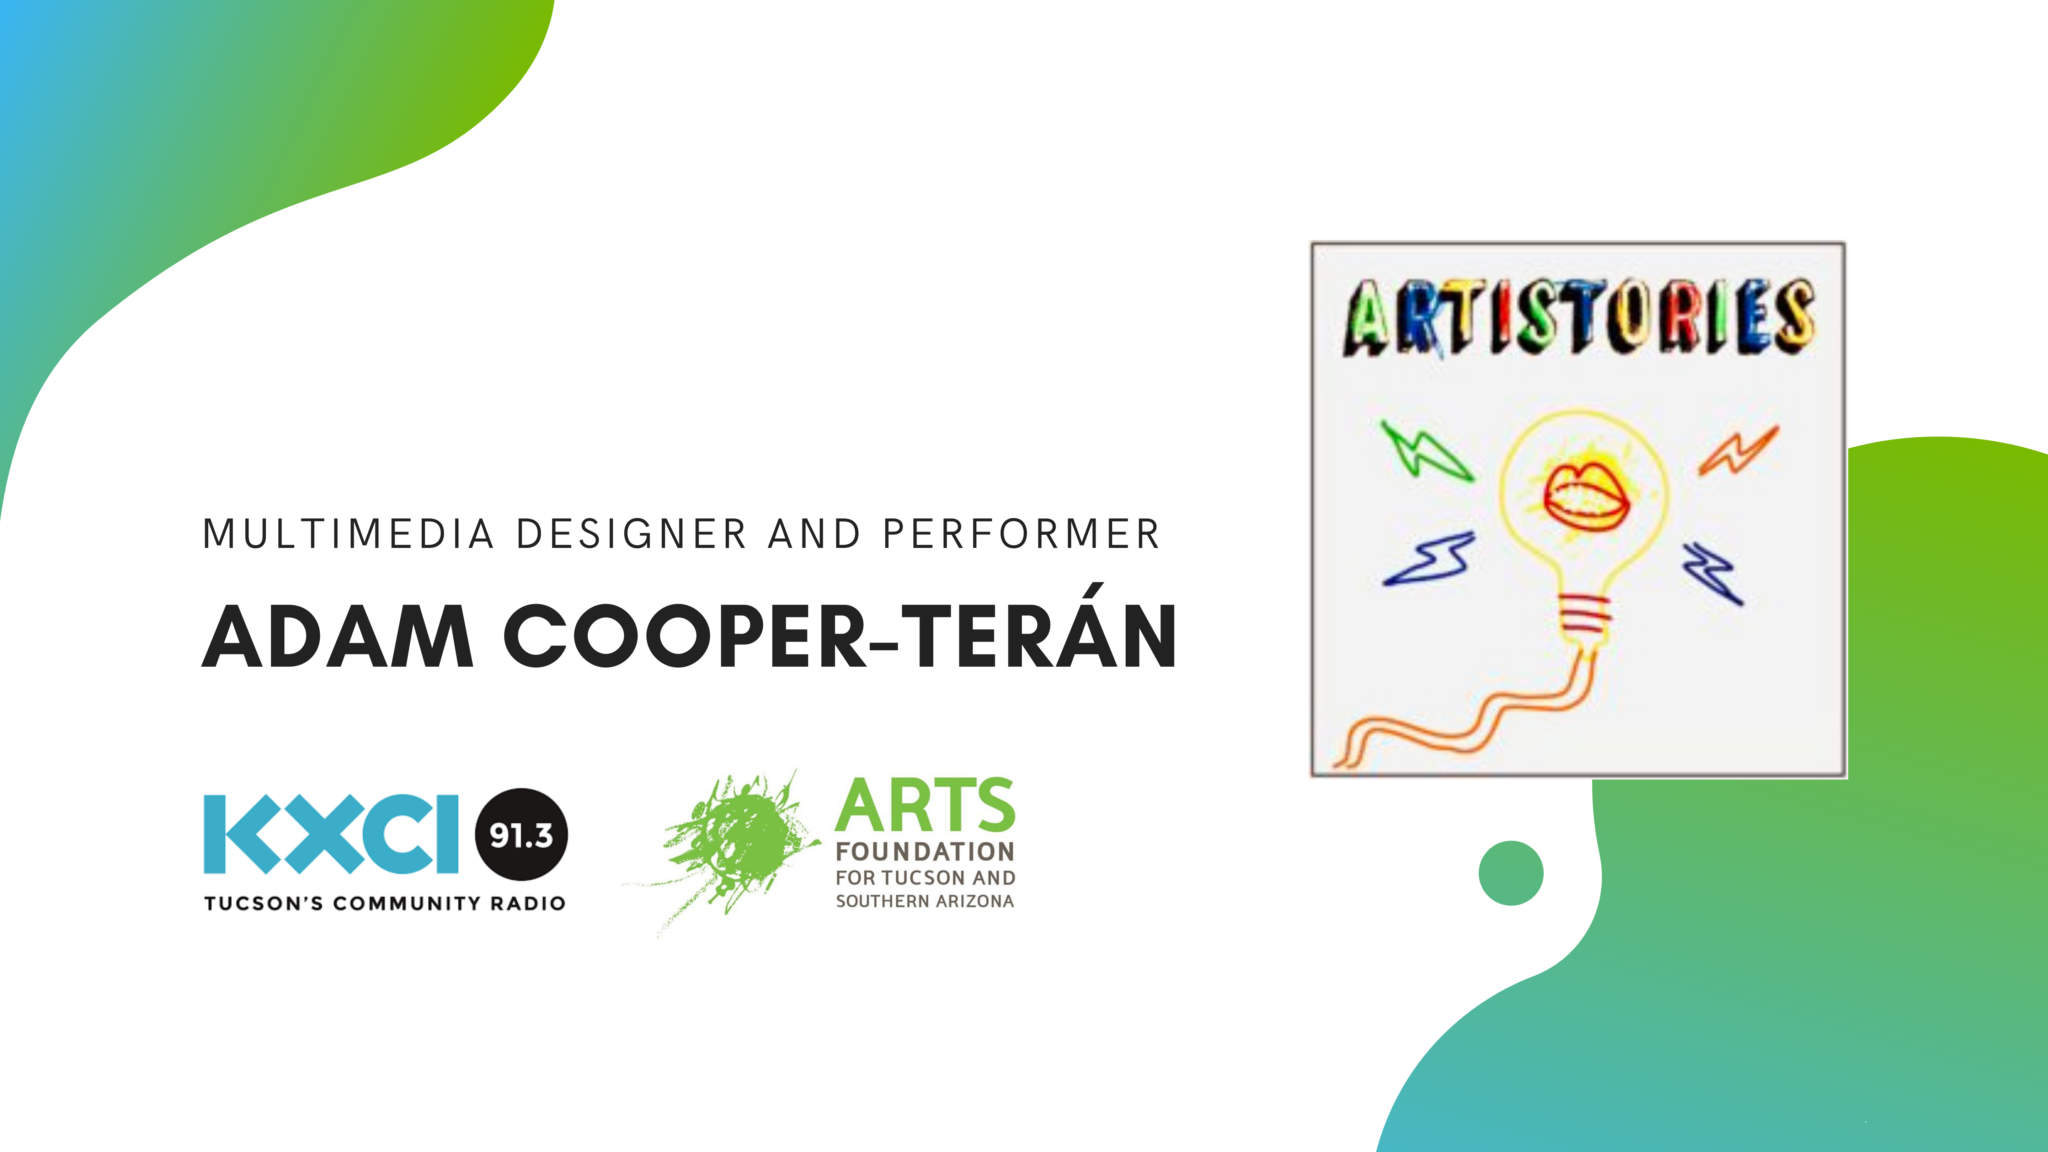 ARTISTORIES: Adam Cooper-Terán